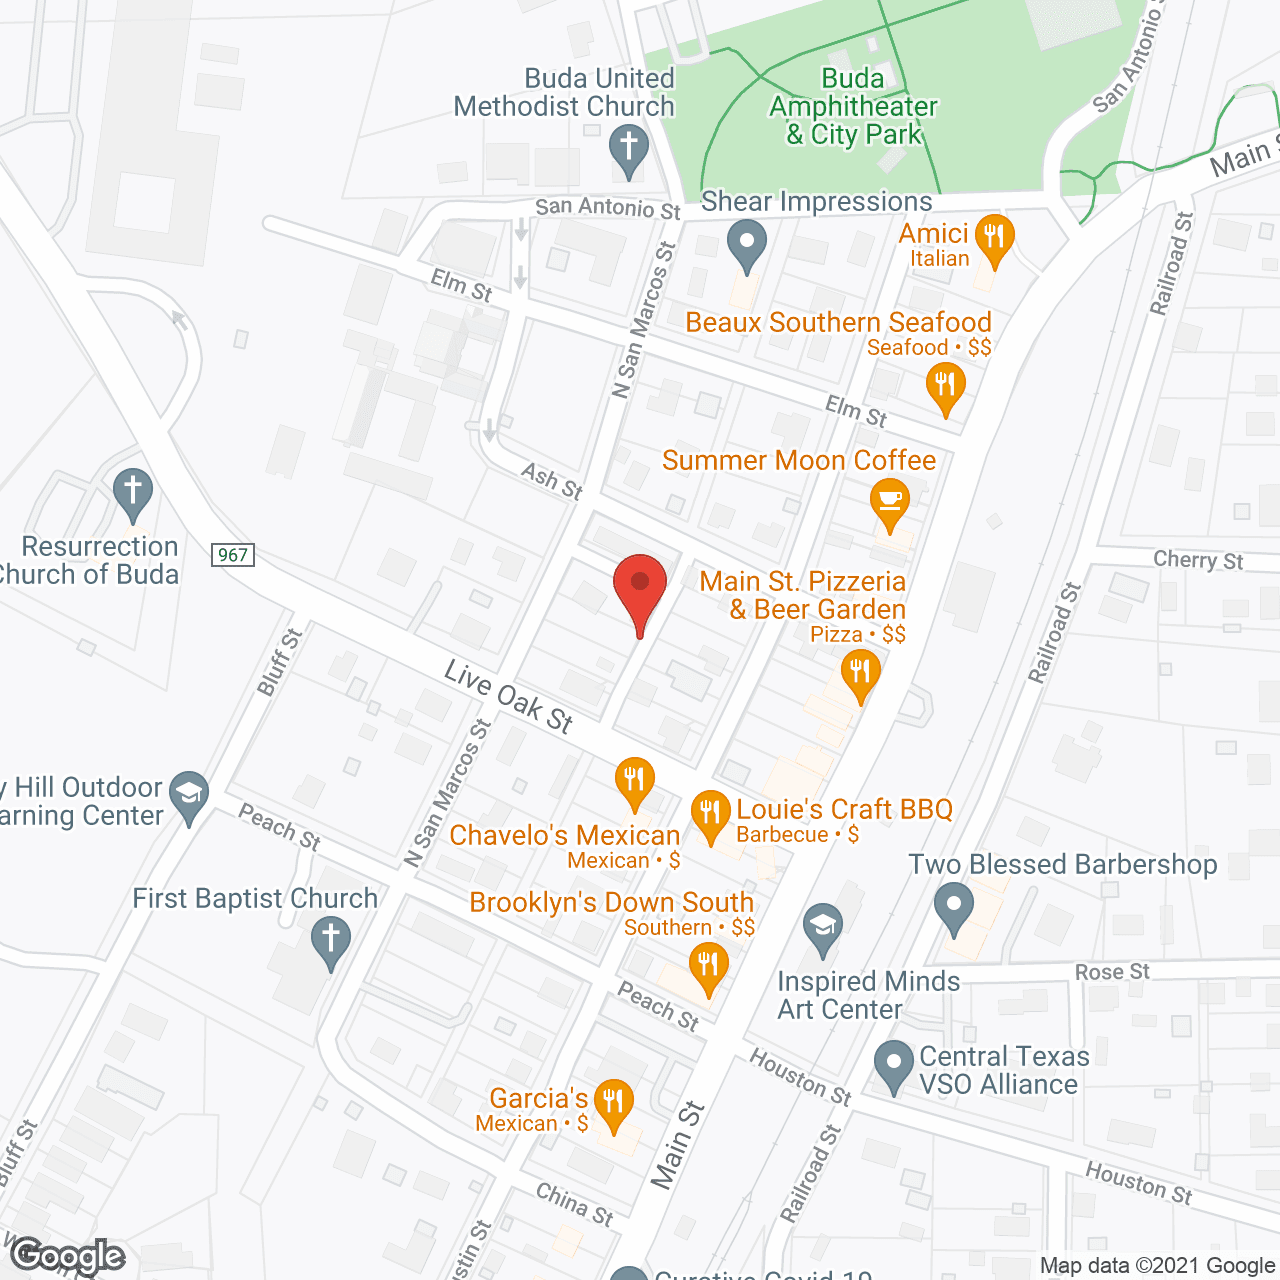 Buda Oaks in google map